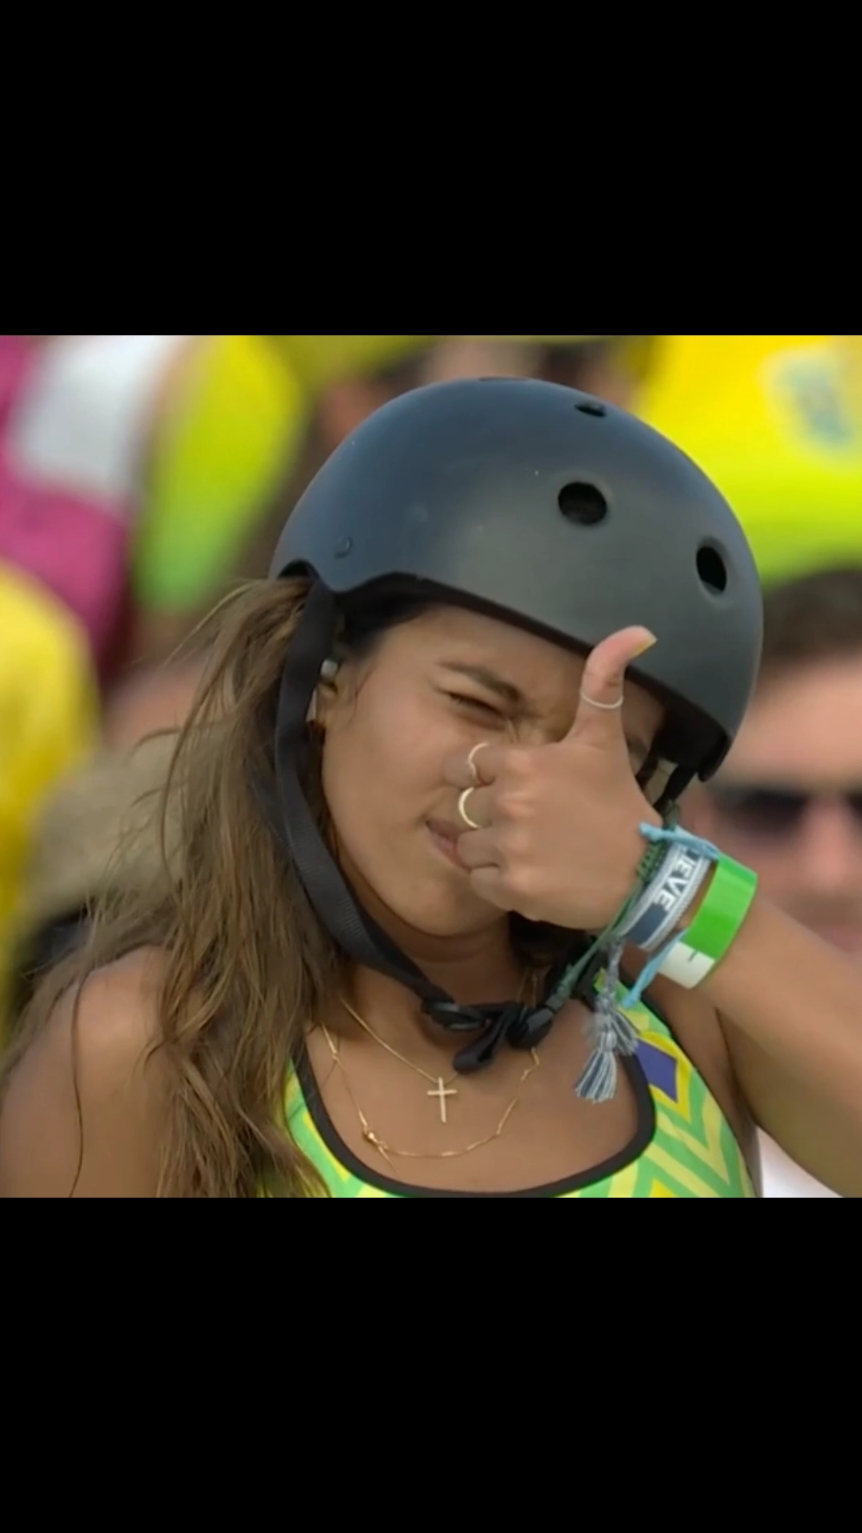 Rayssa,uma menina que tinha um skate e um sonho. olha onde a nossa Rayssa chegou. amo demais ela😆😆😆 #rayssaleal #Rayssaleal #foryou #edit #brasil 